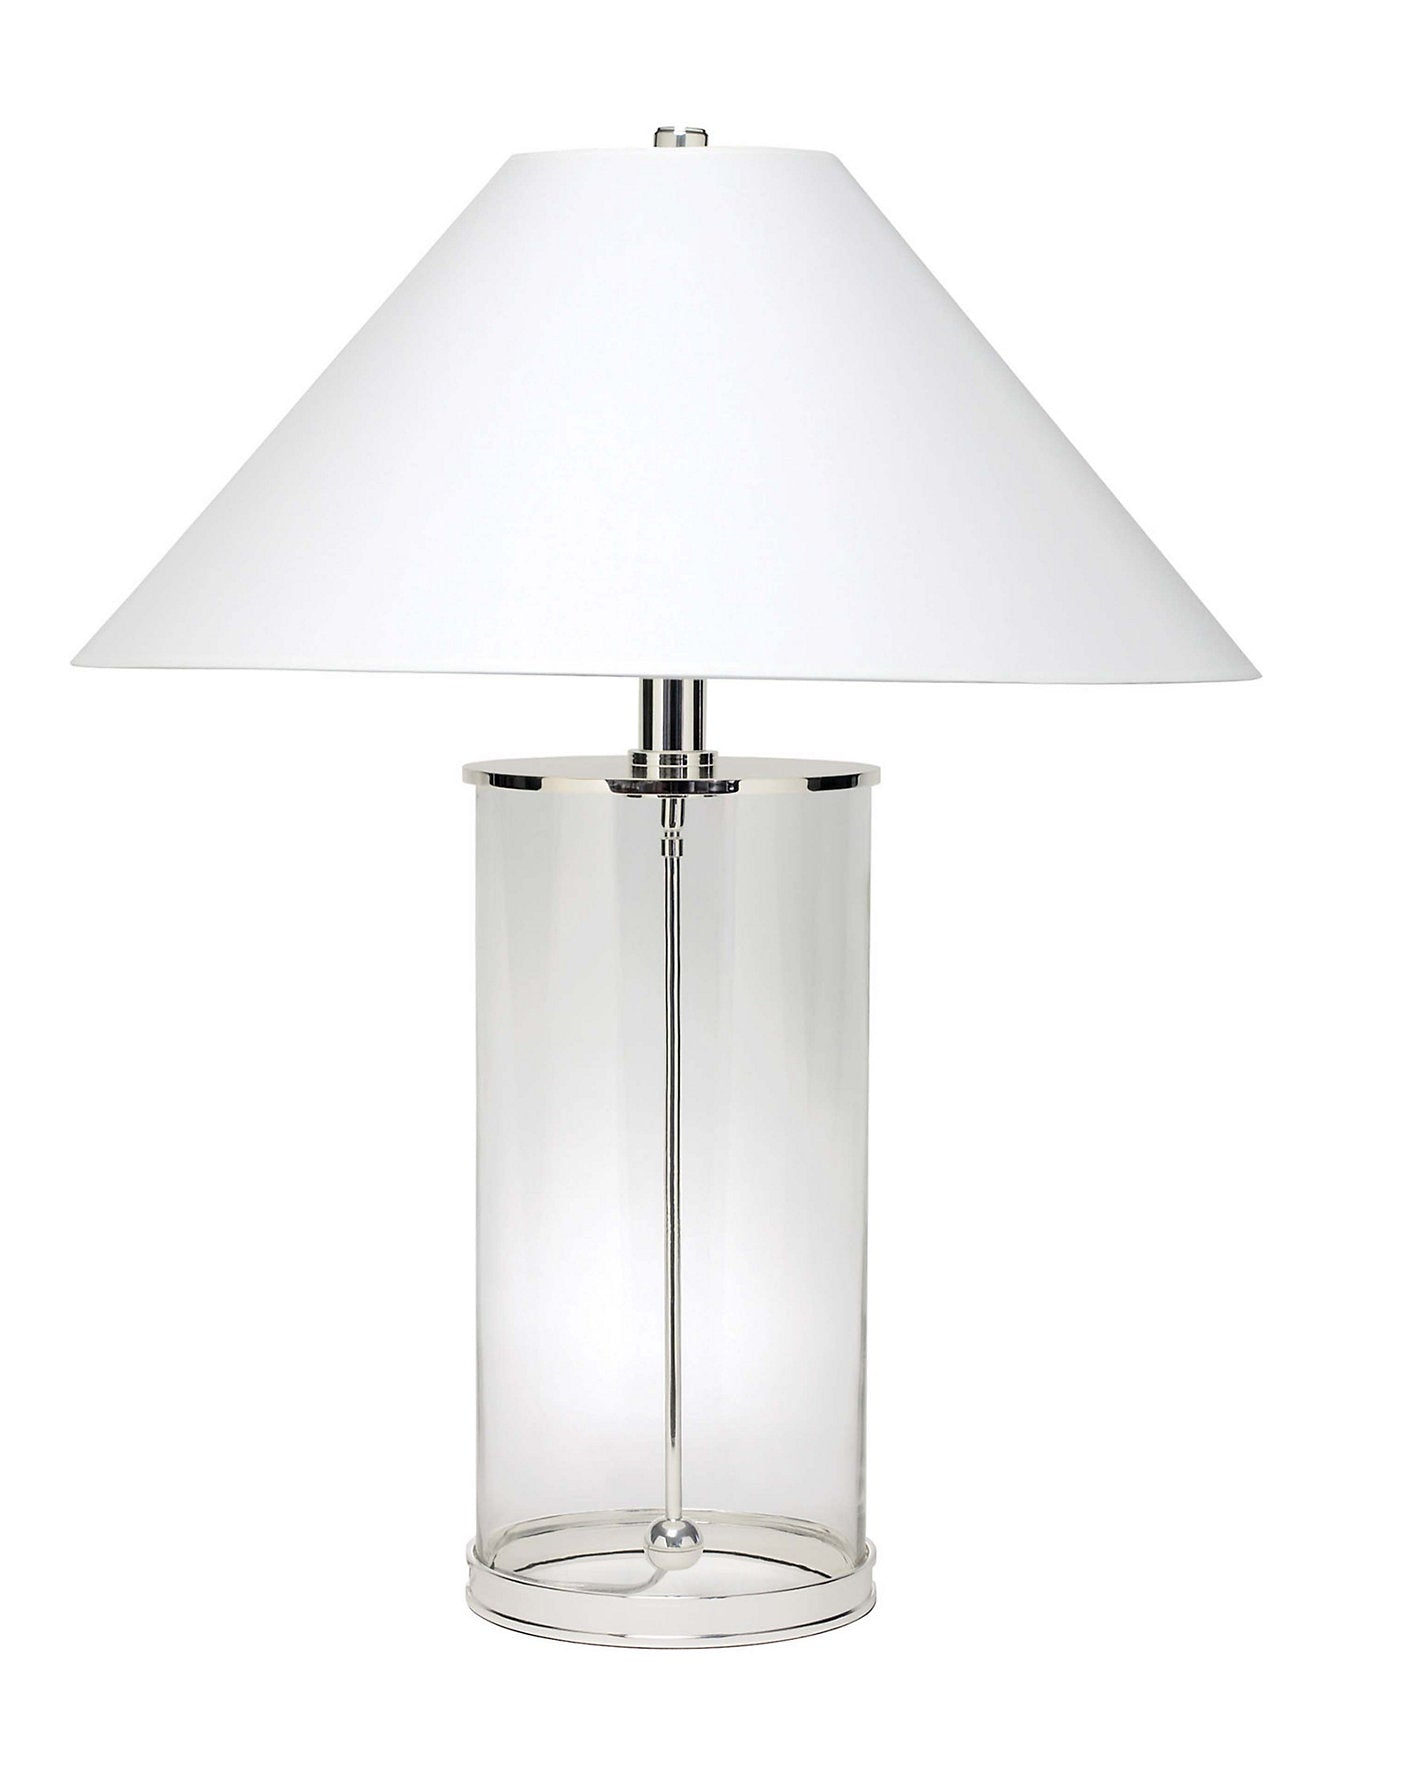 Серебряная настольная лампа "Сандерс", основание сделано из прозрачного стекла в виде тубуса.